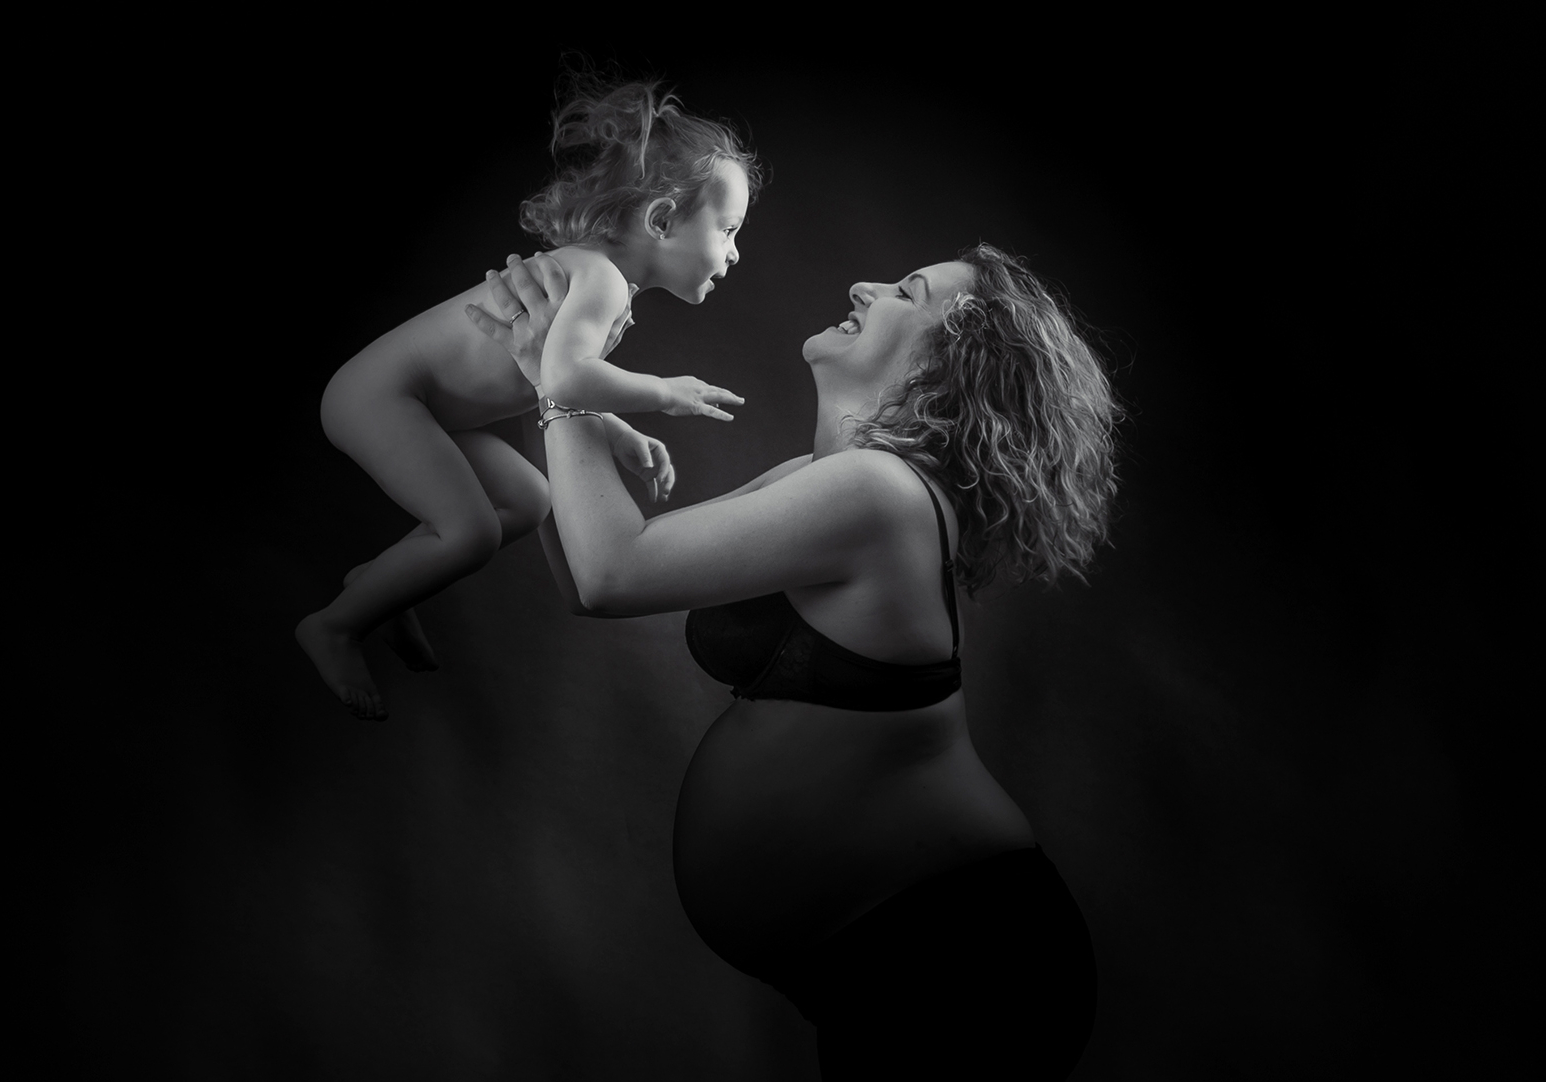 Pose dans le mouvement d'un maman et son enfant en studio en noir en blanc.